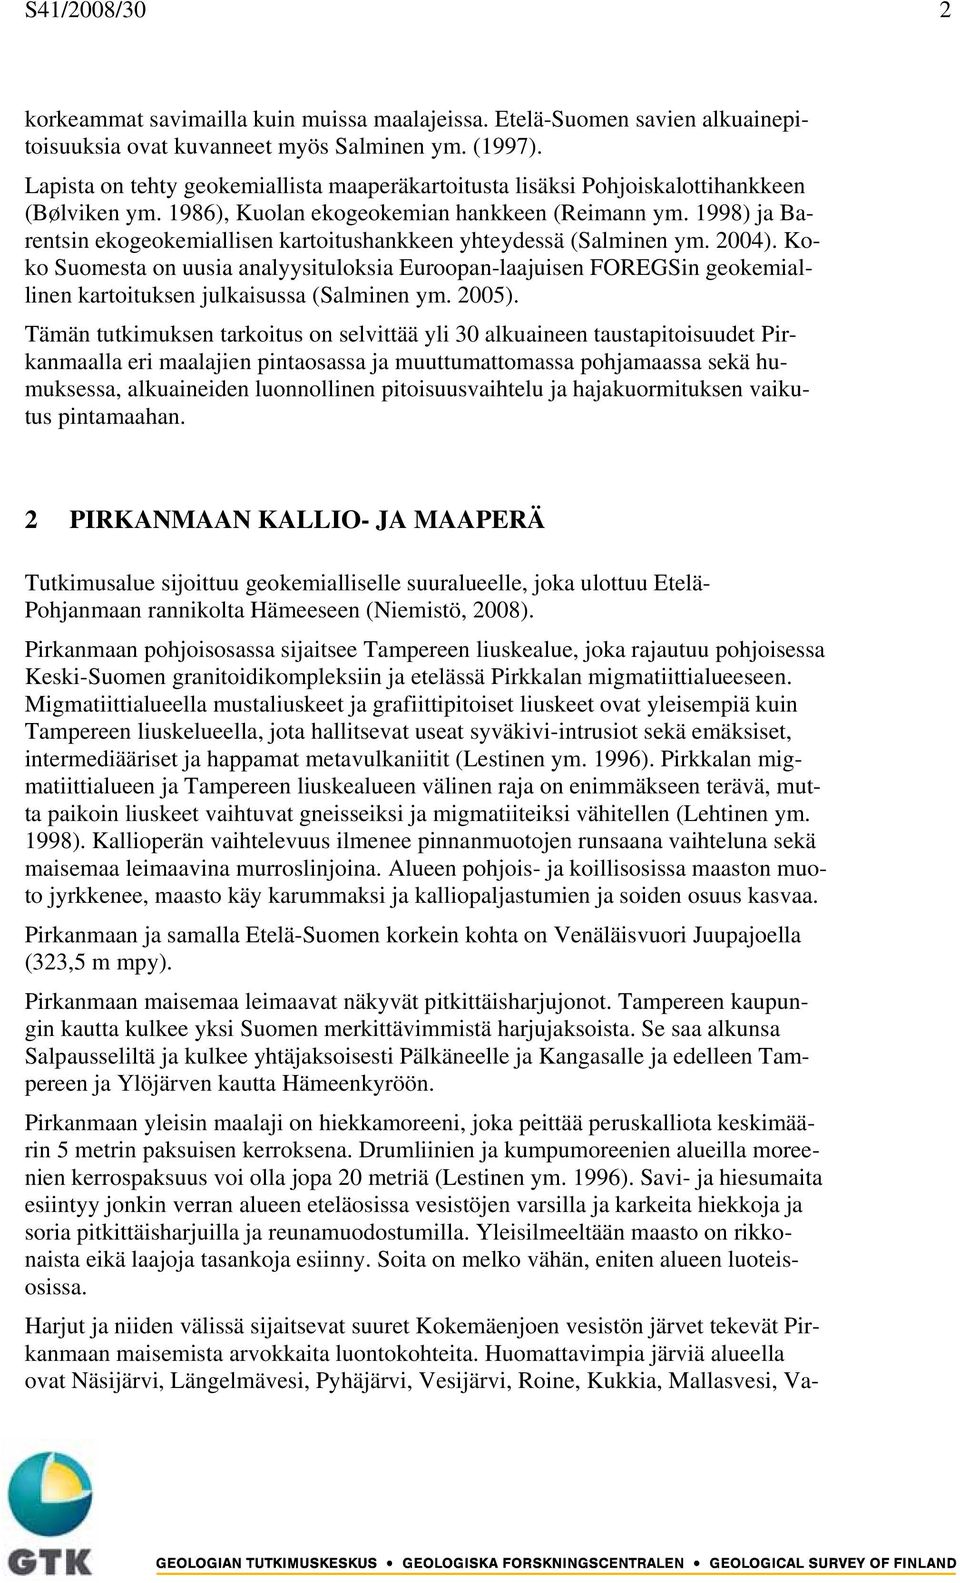 1998) ja Barentsin ekogeokemiallisen kartoitushankkeen yhteydessä (Salminen ym. 2004).